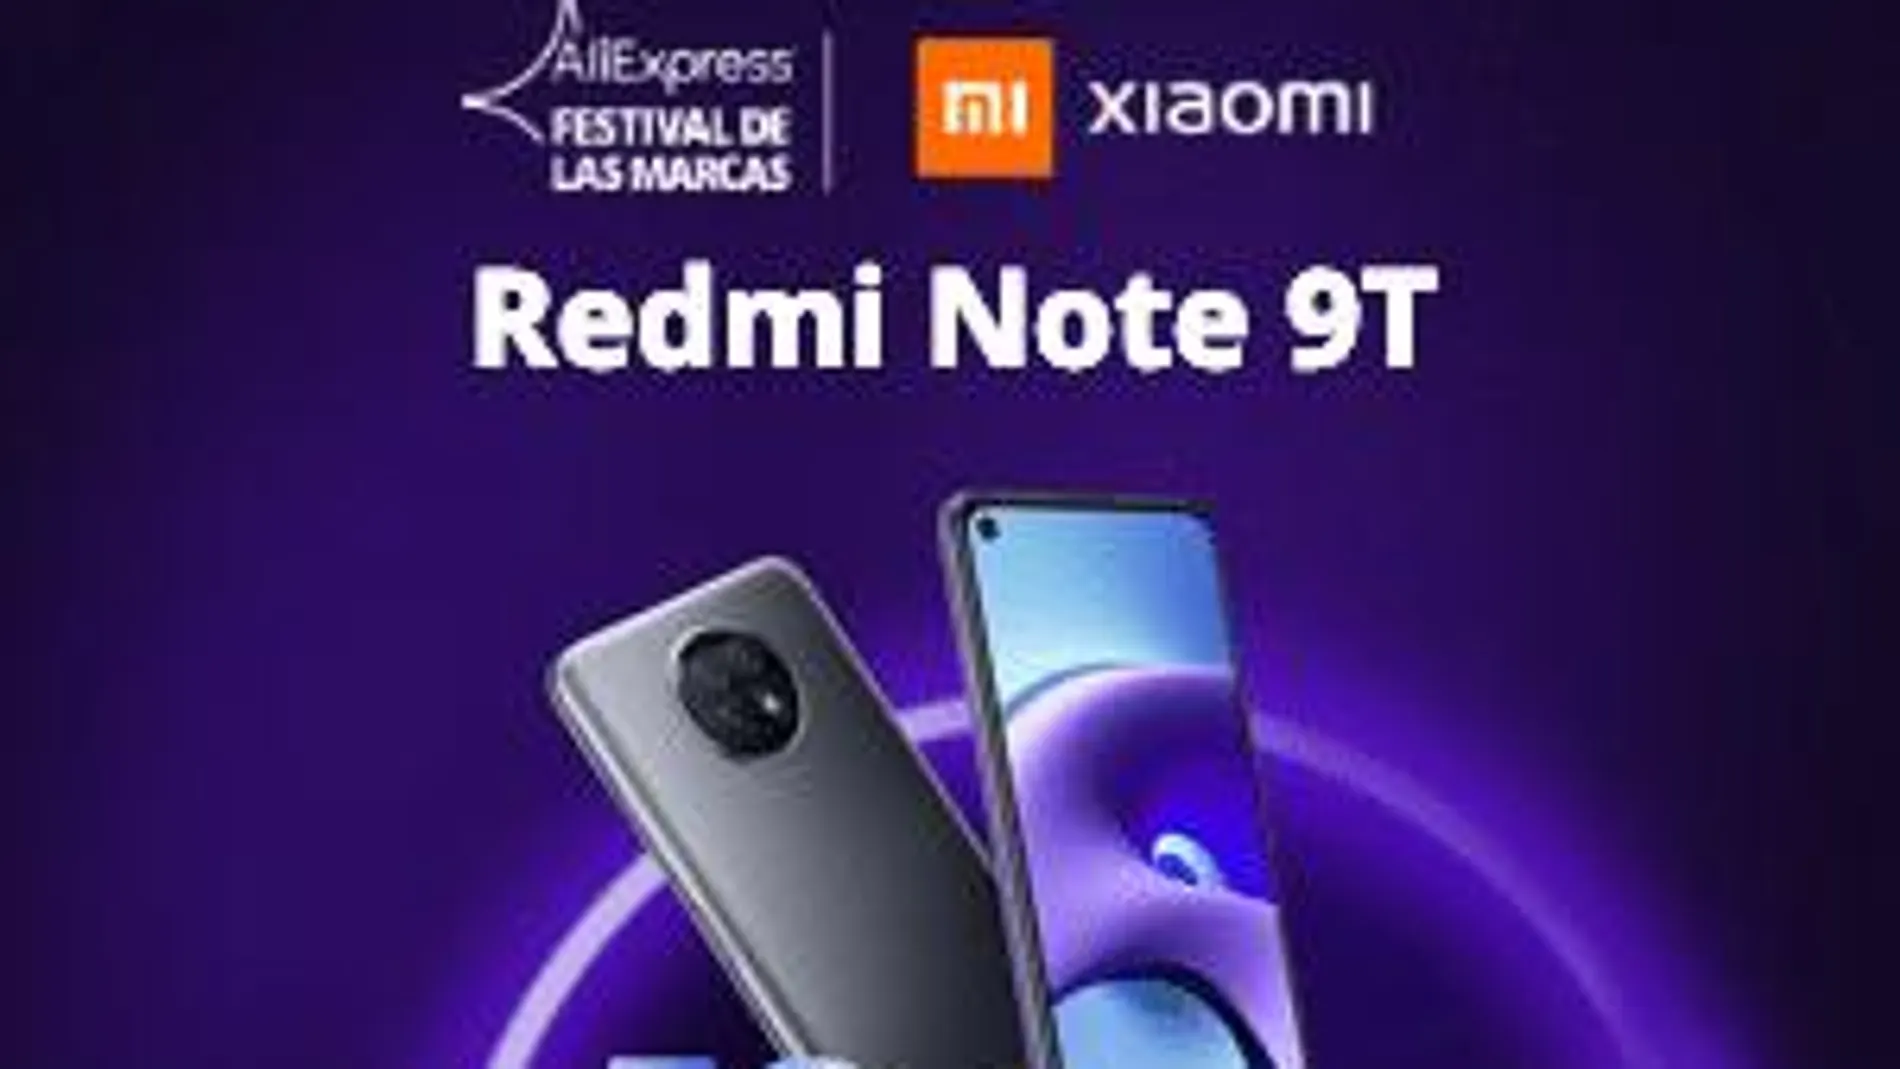 Nuevo Redmi Note 9T en oferta